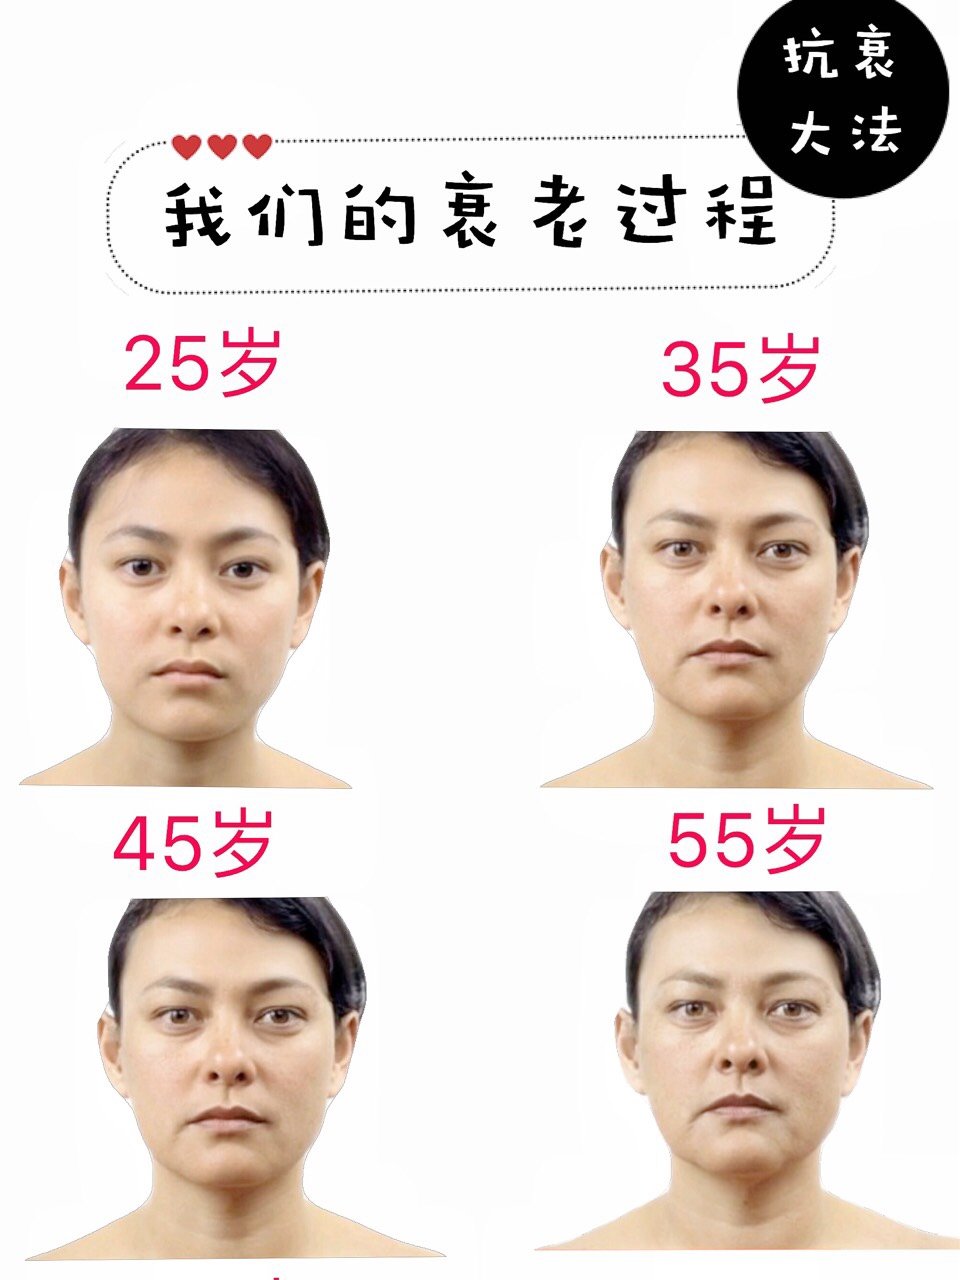 人类一般都会从25岁左右开始衰老,面部肌肤的胶原蛋白快速流失,都会能